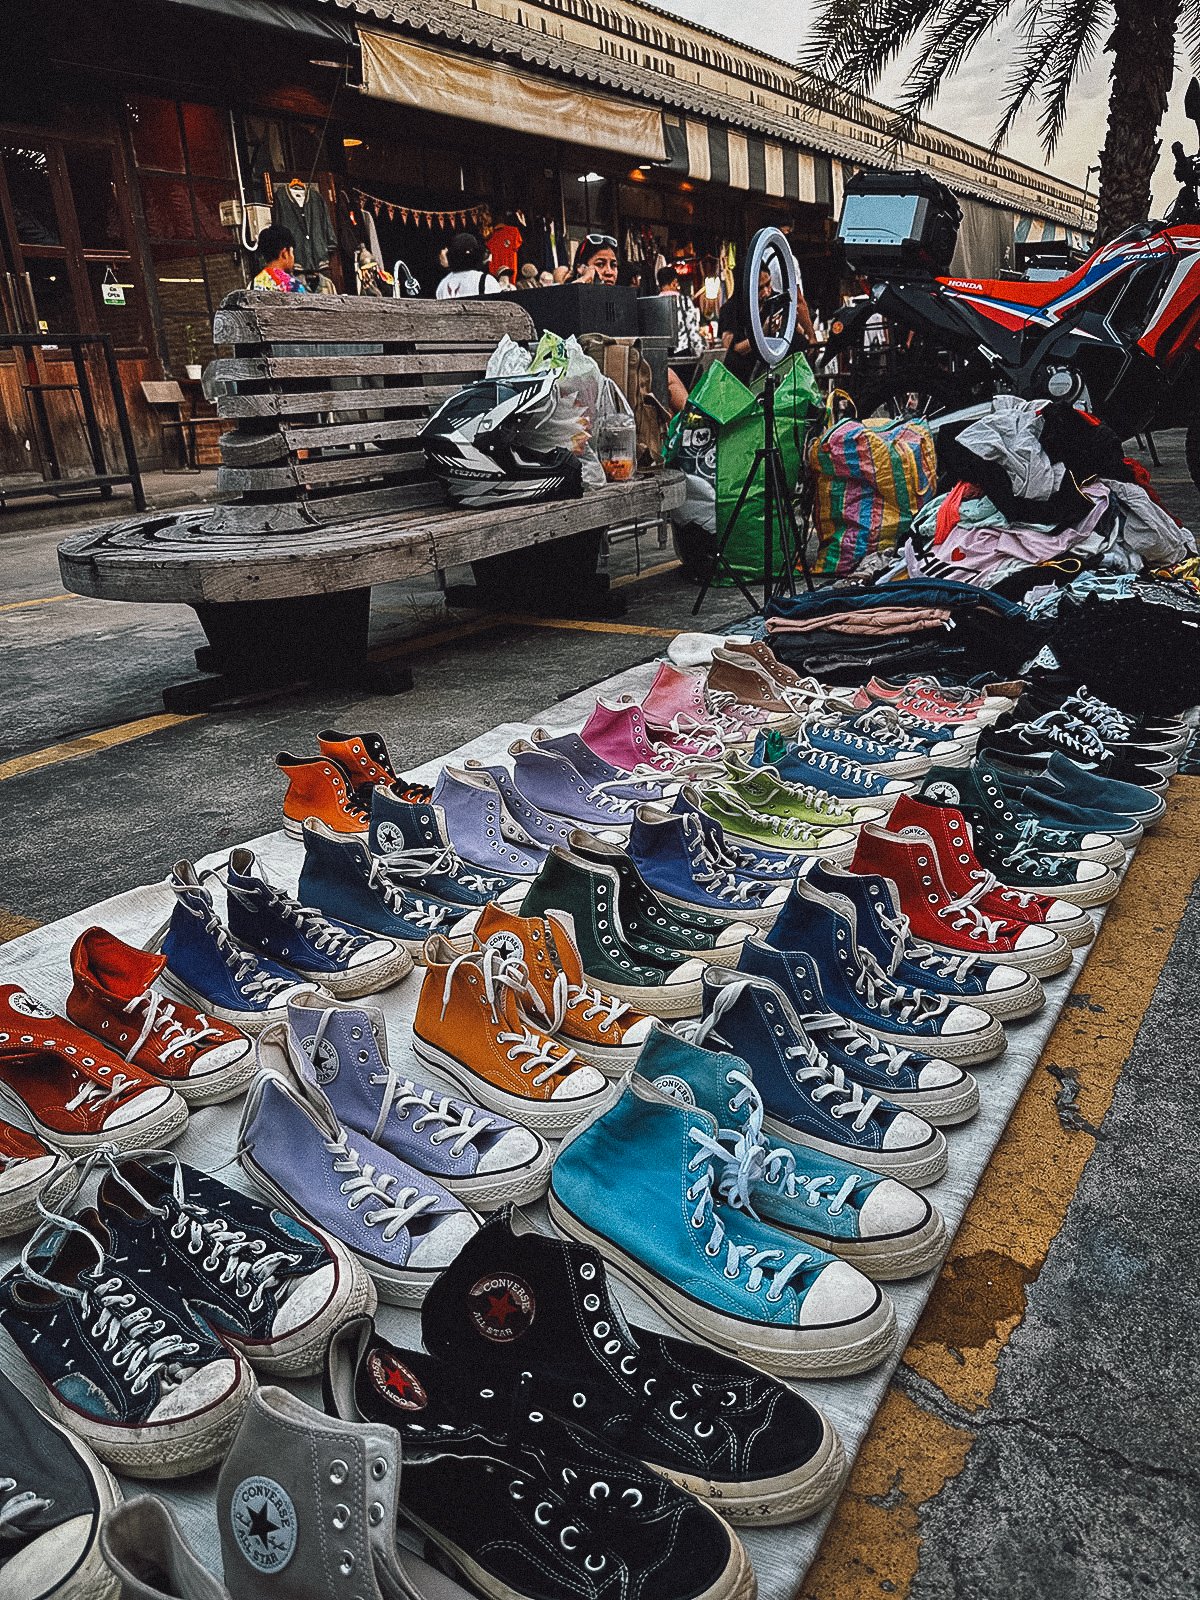 Converse shoes for sale at Srinagarindra Train Market in Bangkok